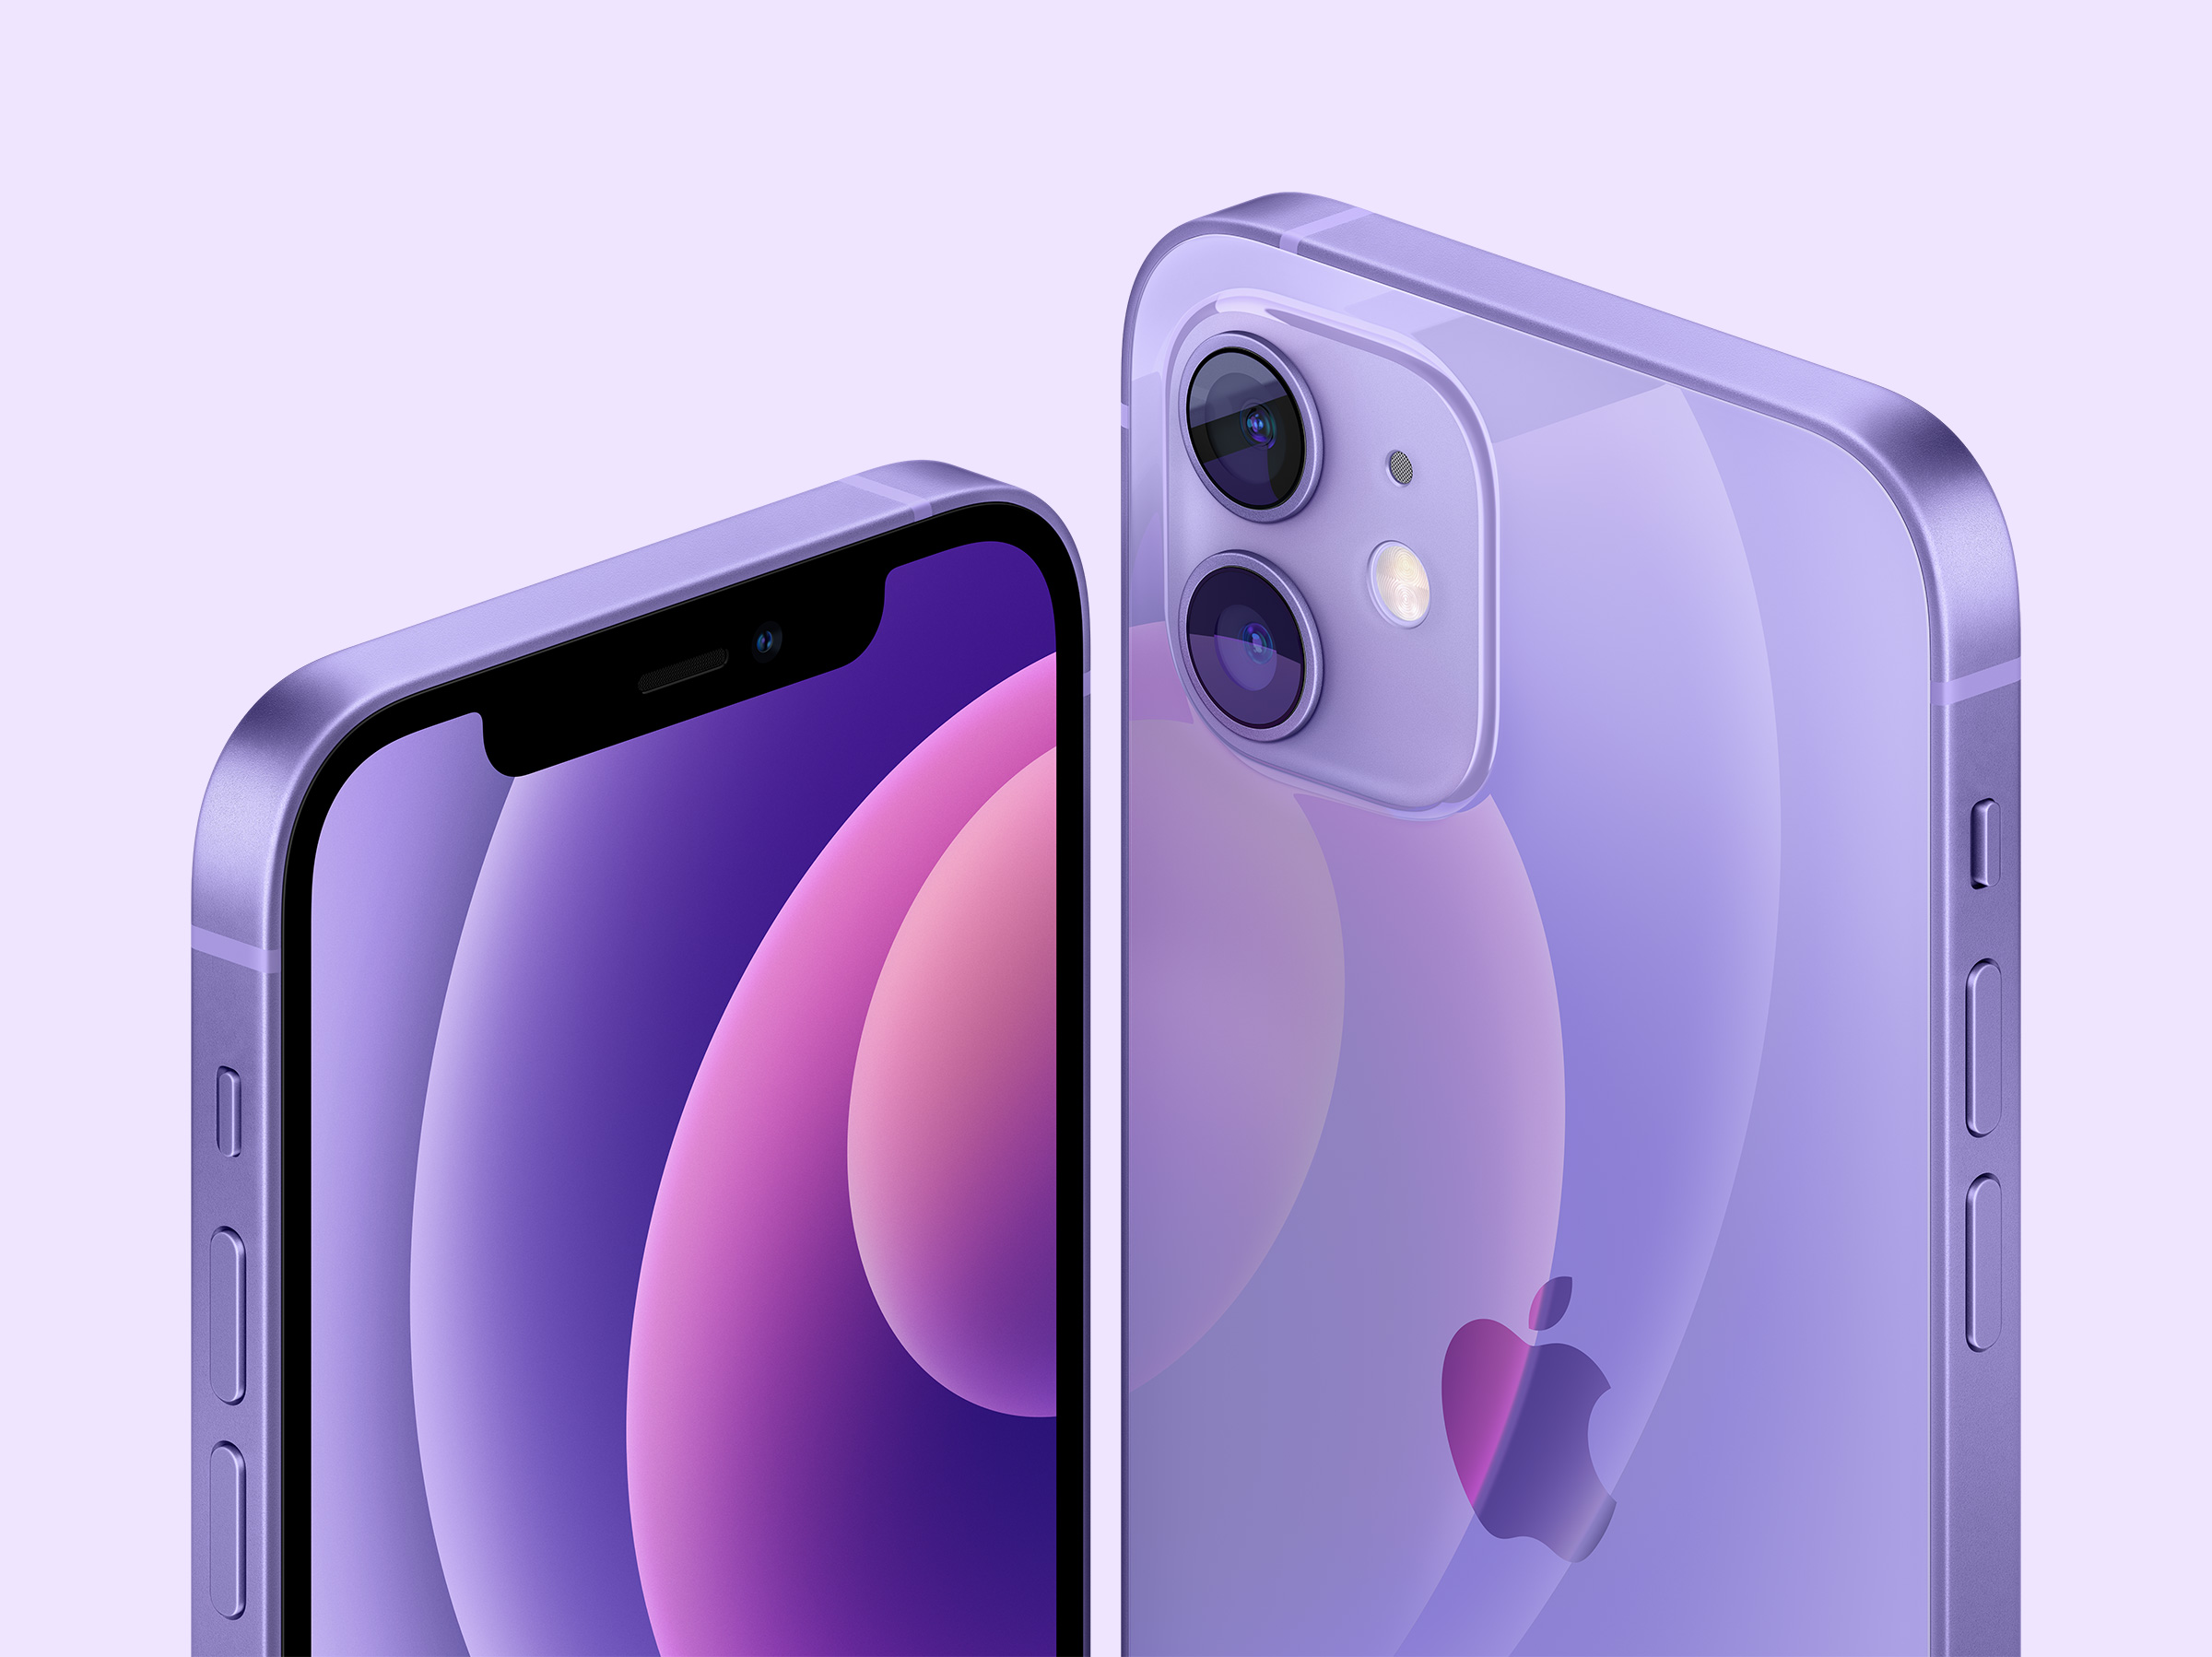 apple_iphone-12-spring21_purple_04202021.jpg